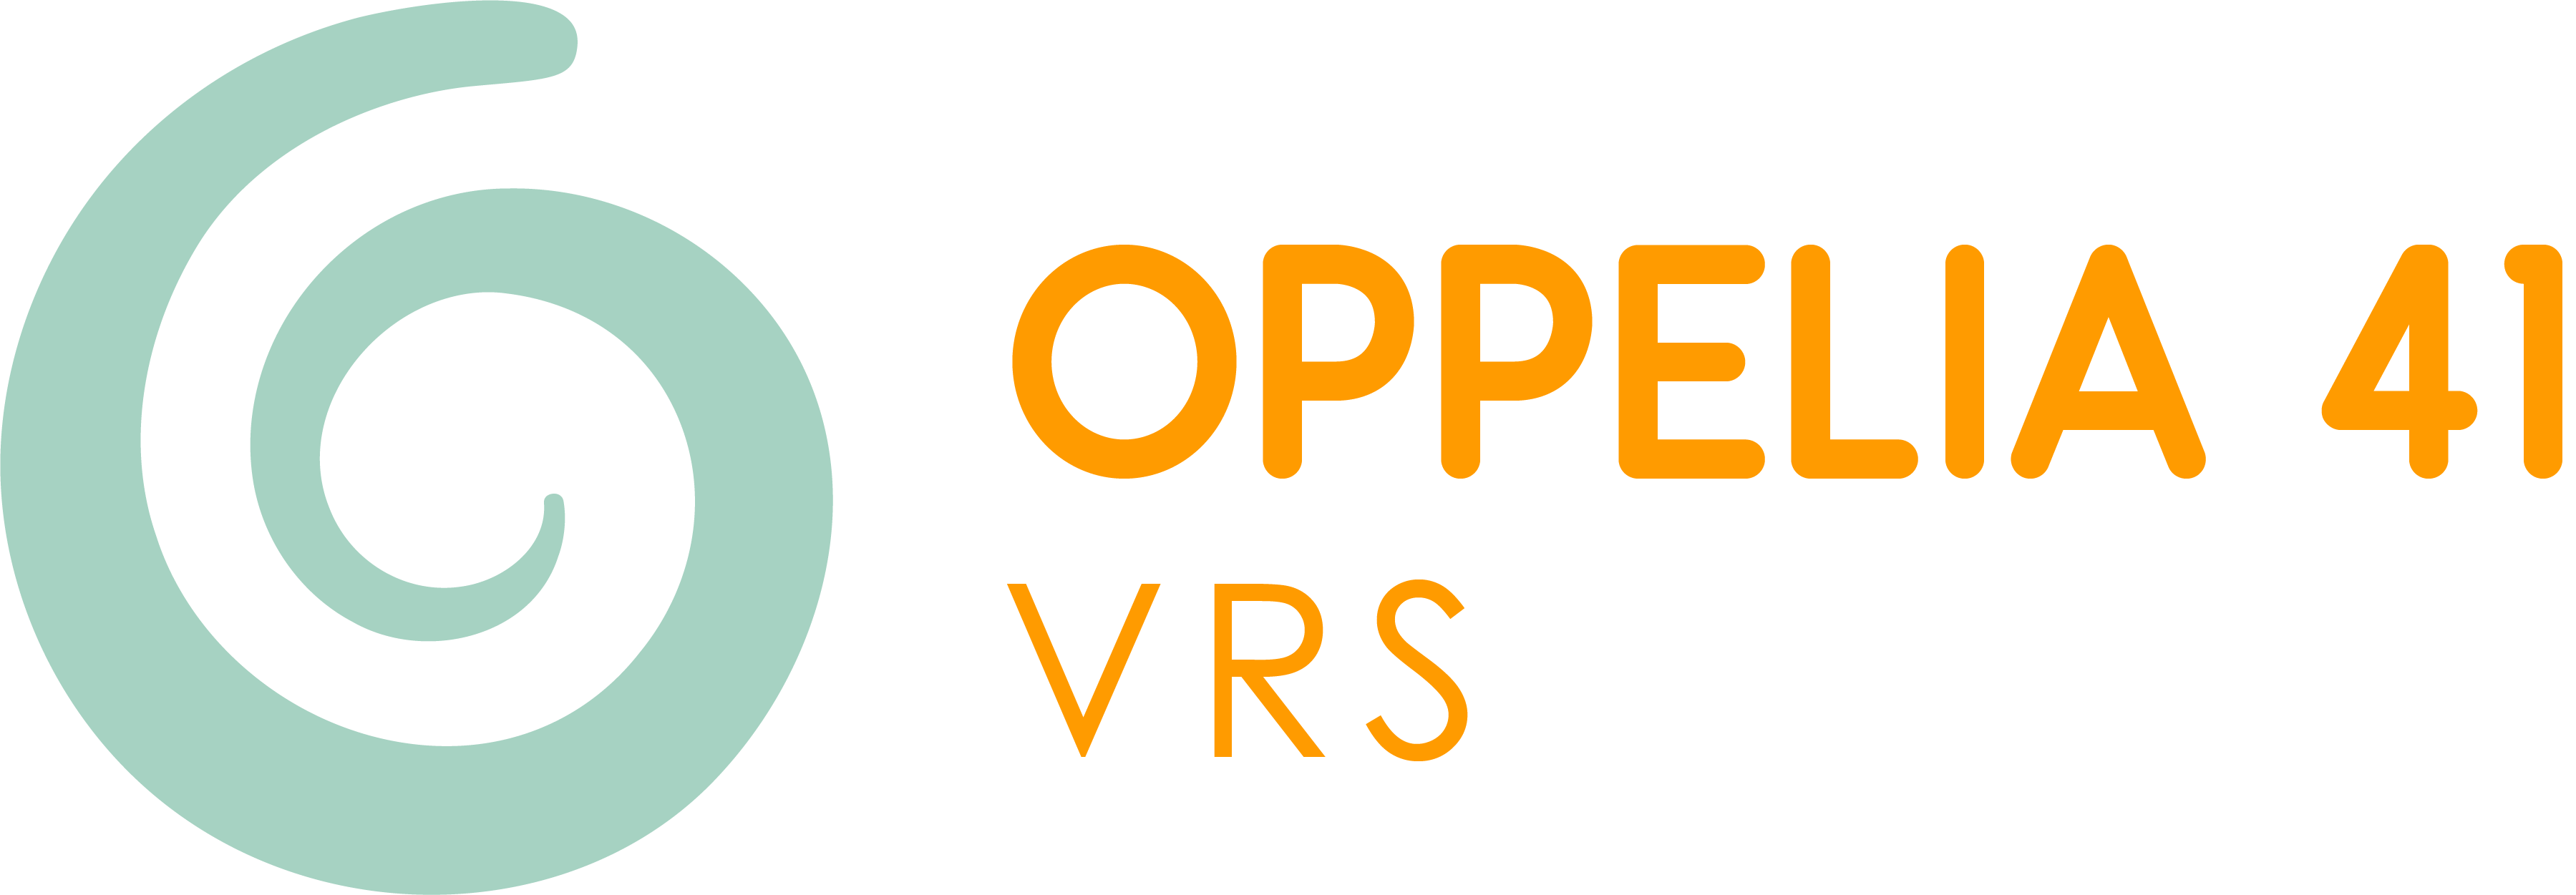 Oppelia VRS 41- RVB